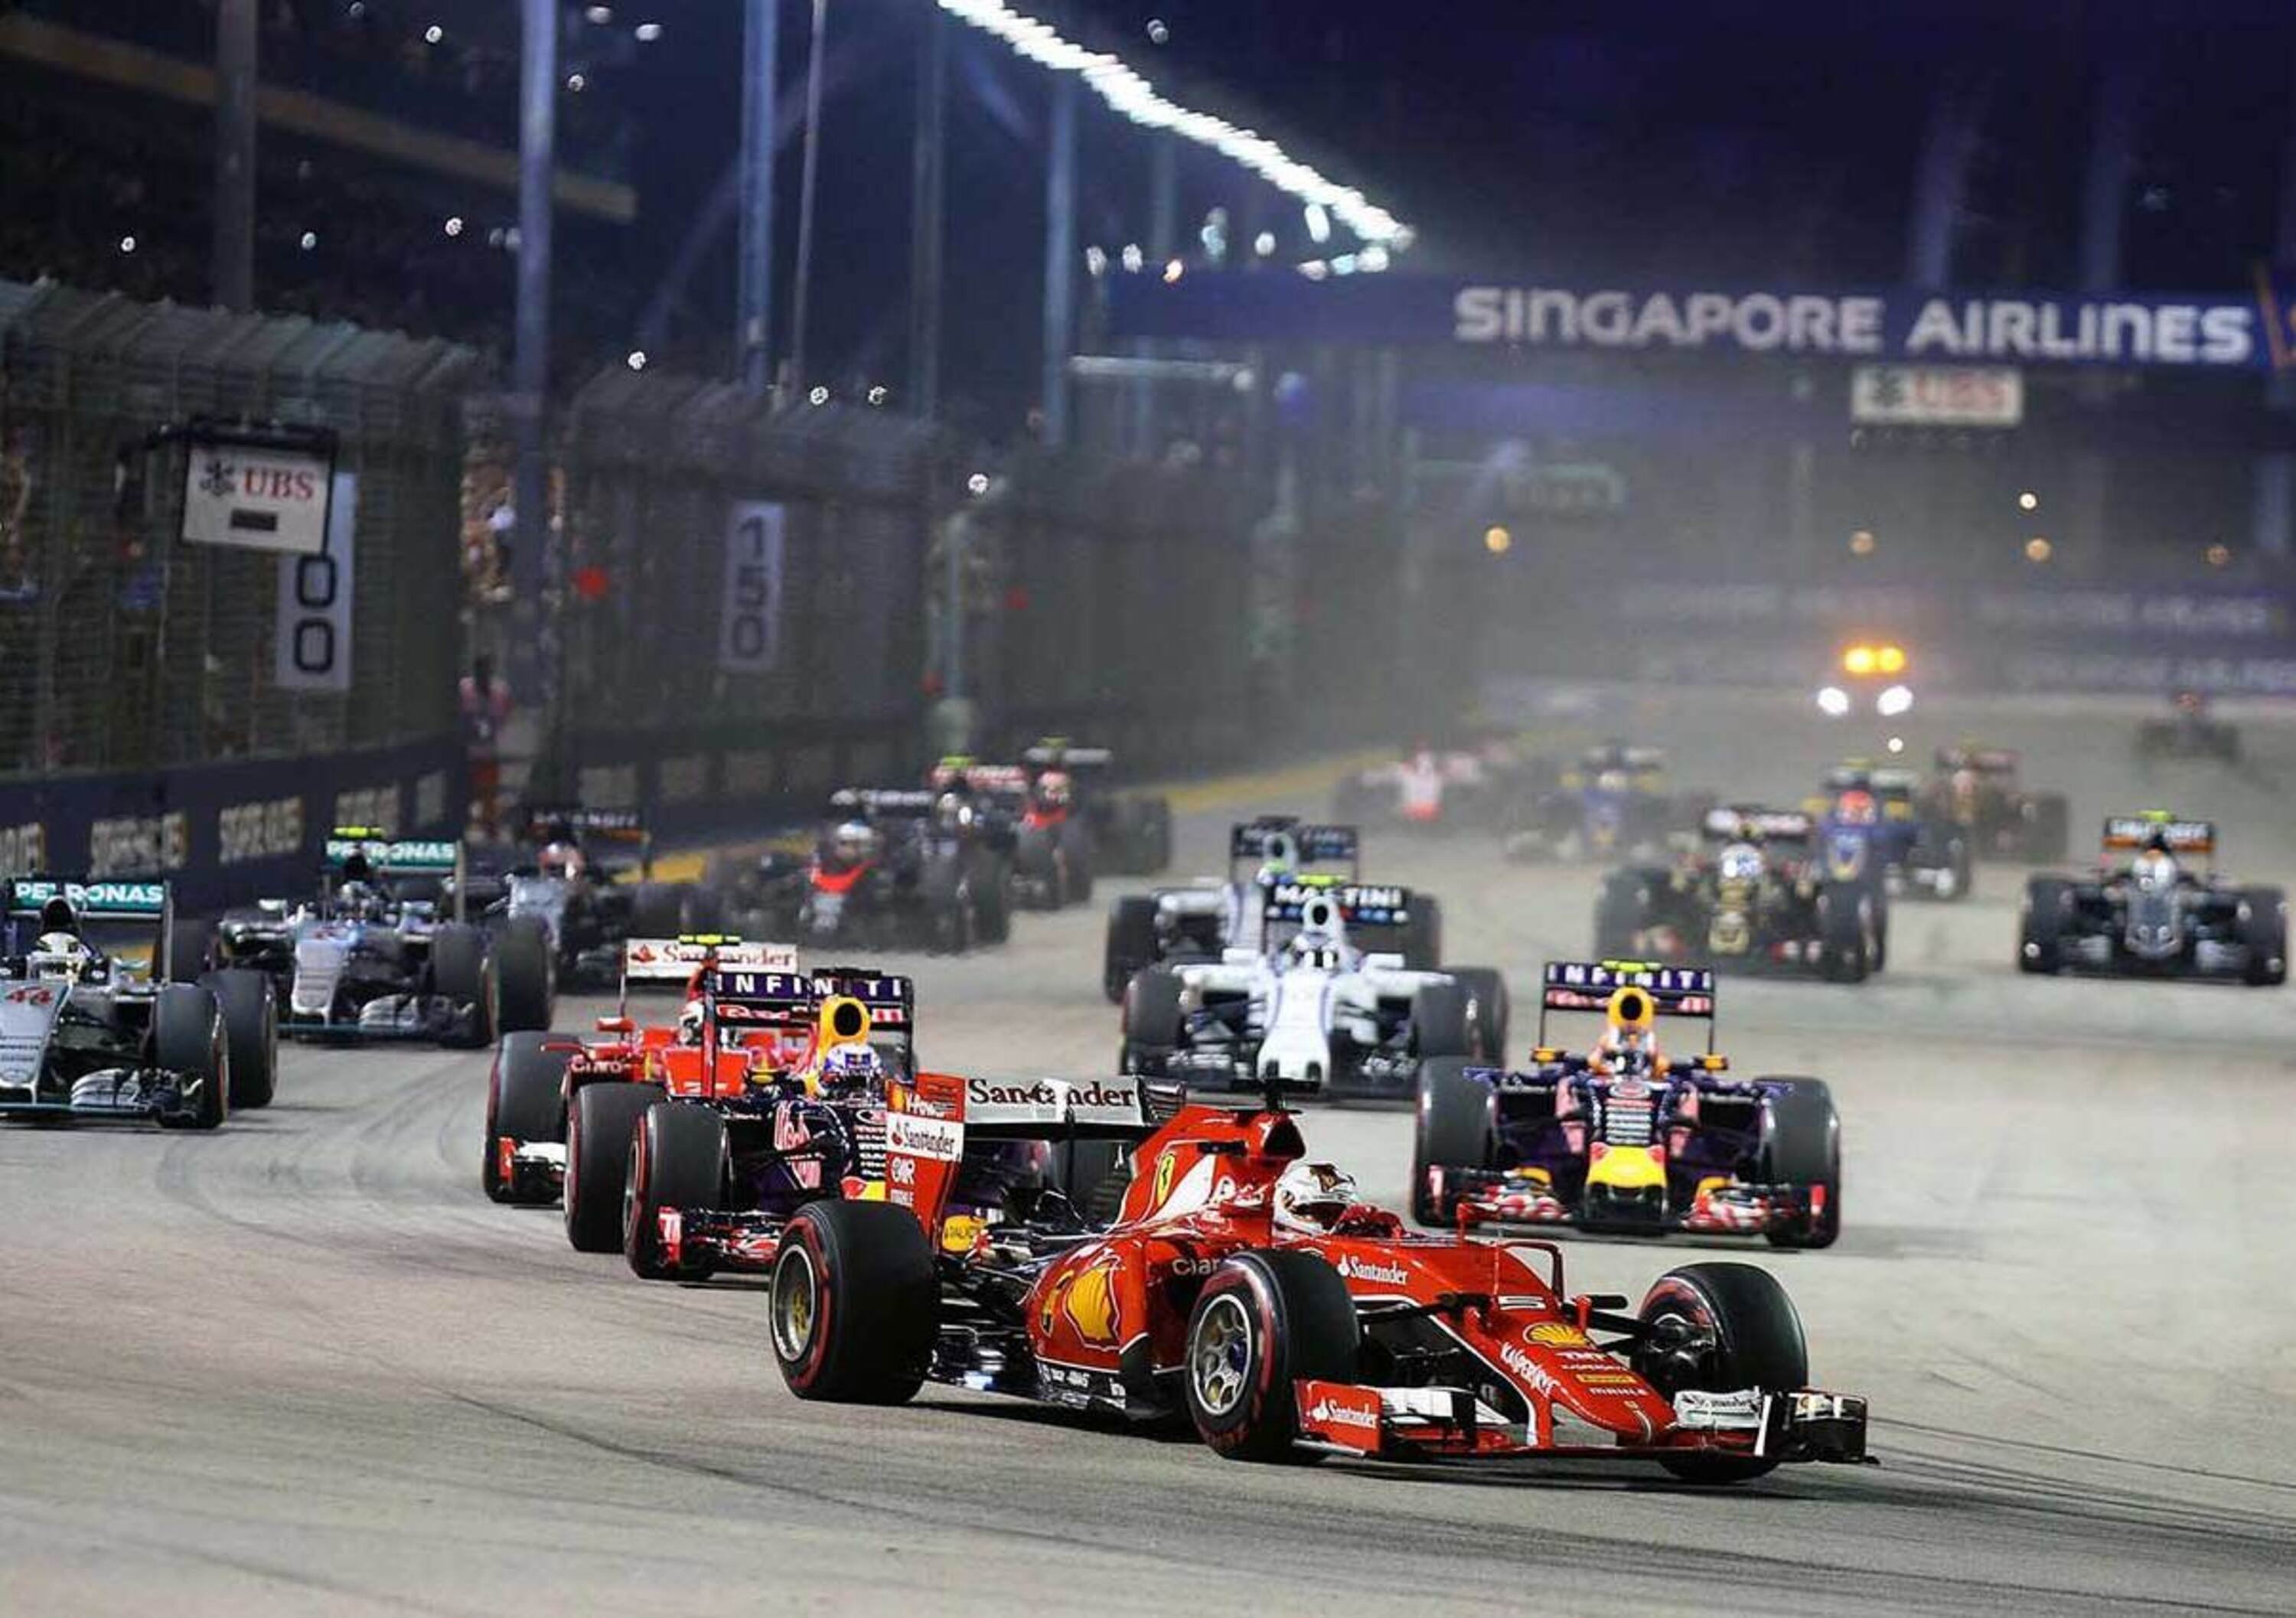 F1, GP Singapore 2015: le pagelle di Marina Bay